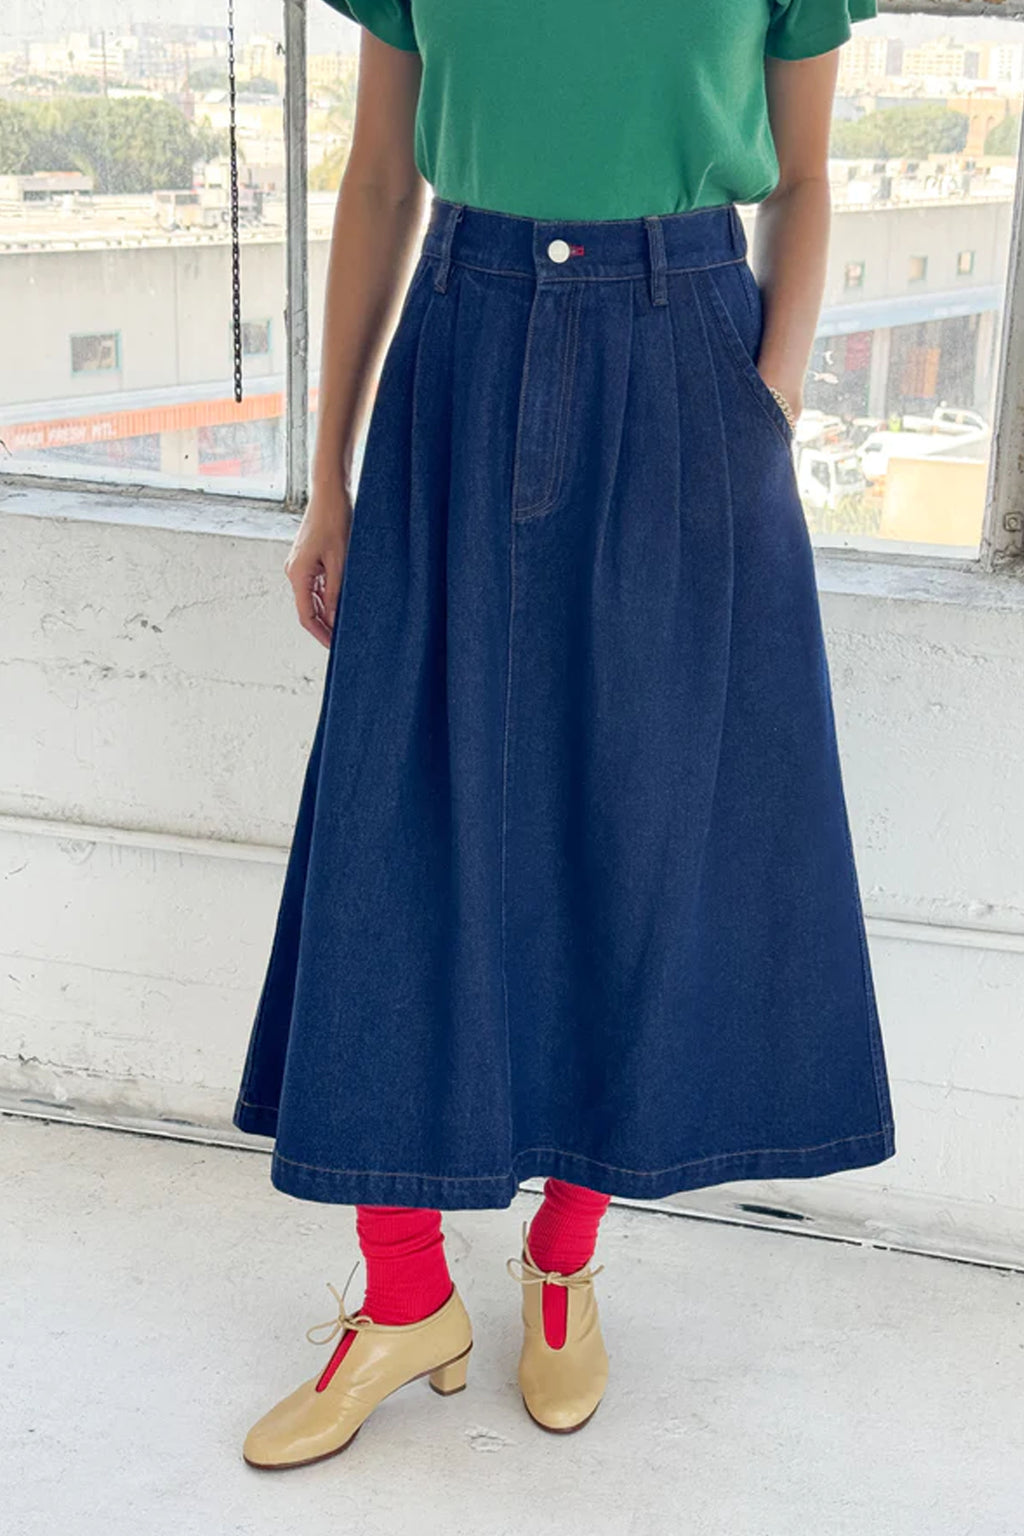 Le Bon Shoppe Long Farm Girl Skirt - The Mercantile London